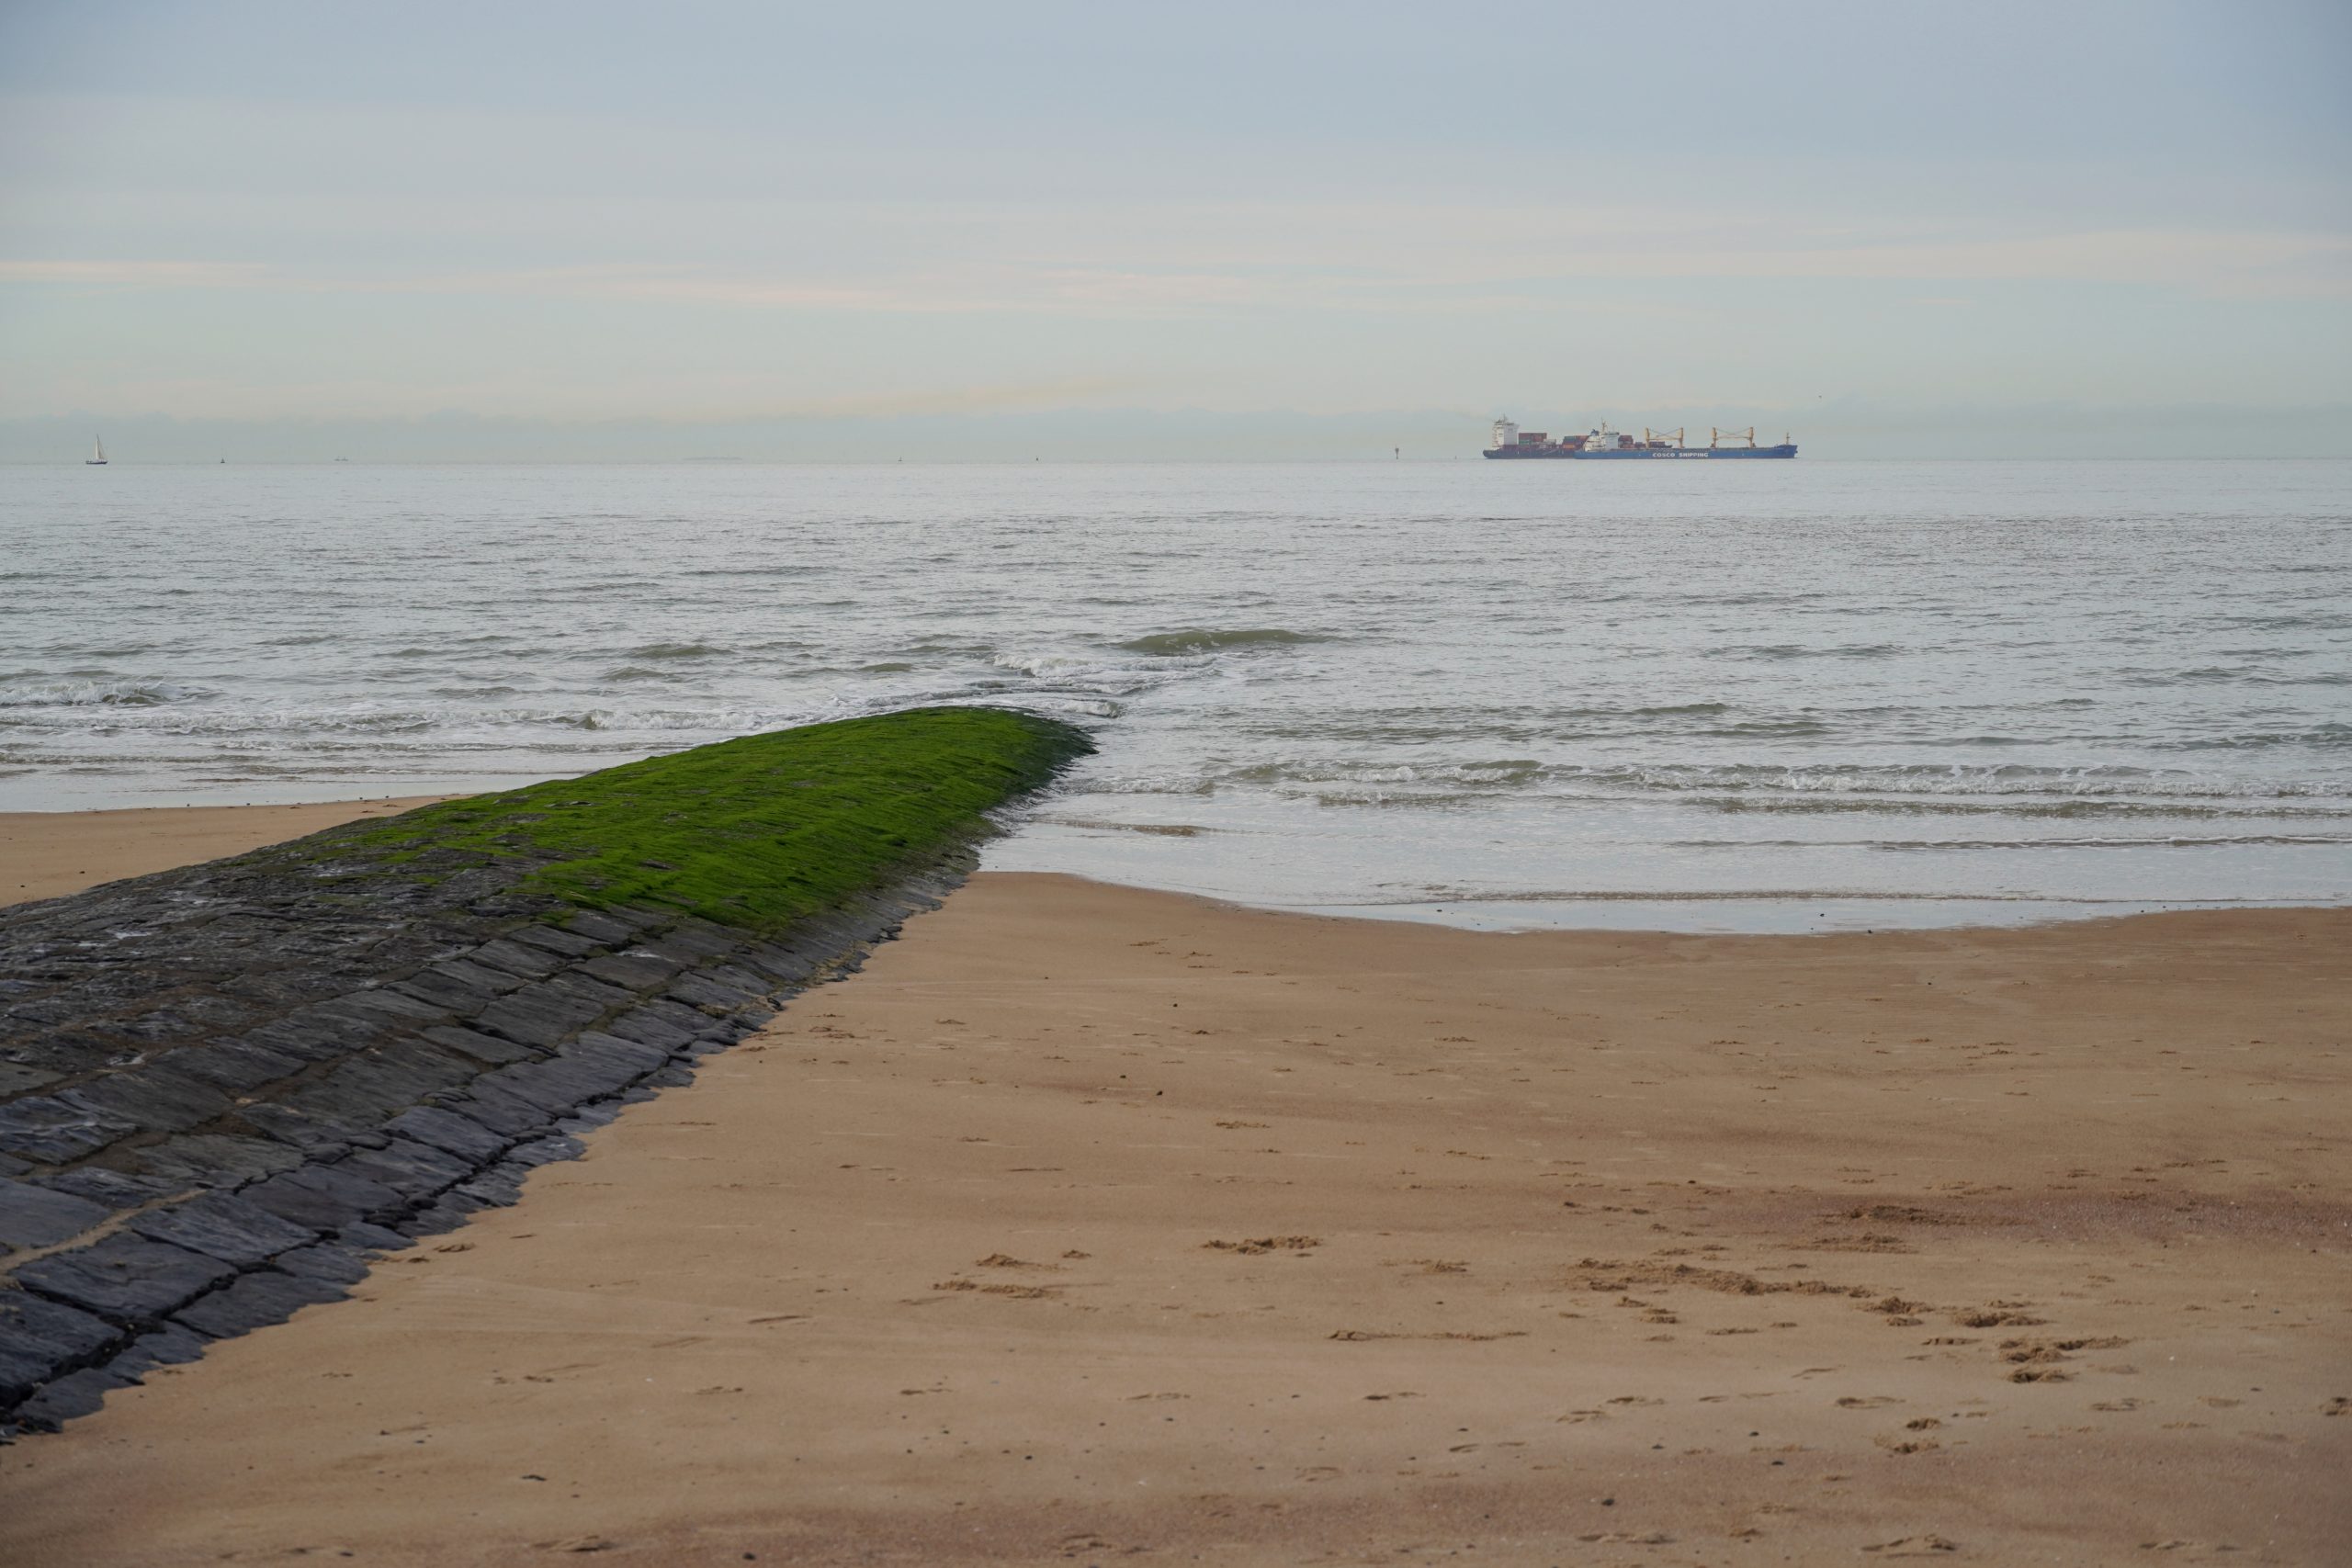 Zicht op zee vanuit Zwin Natuur Park, met zand op de voorgrond en een vrachtschip in de achtergrond.